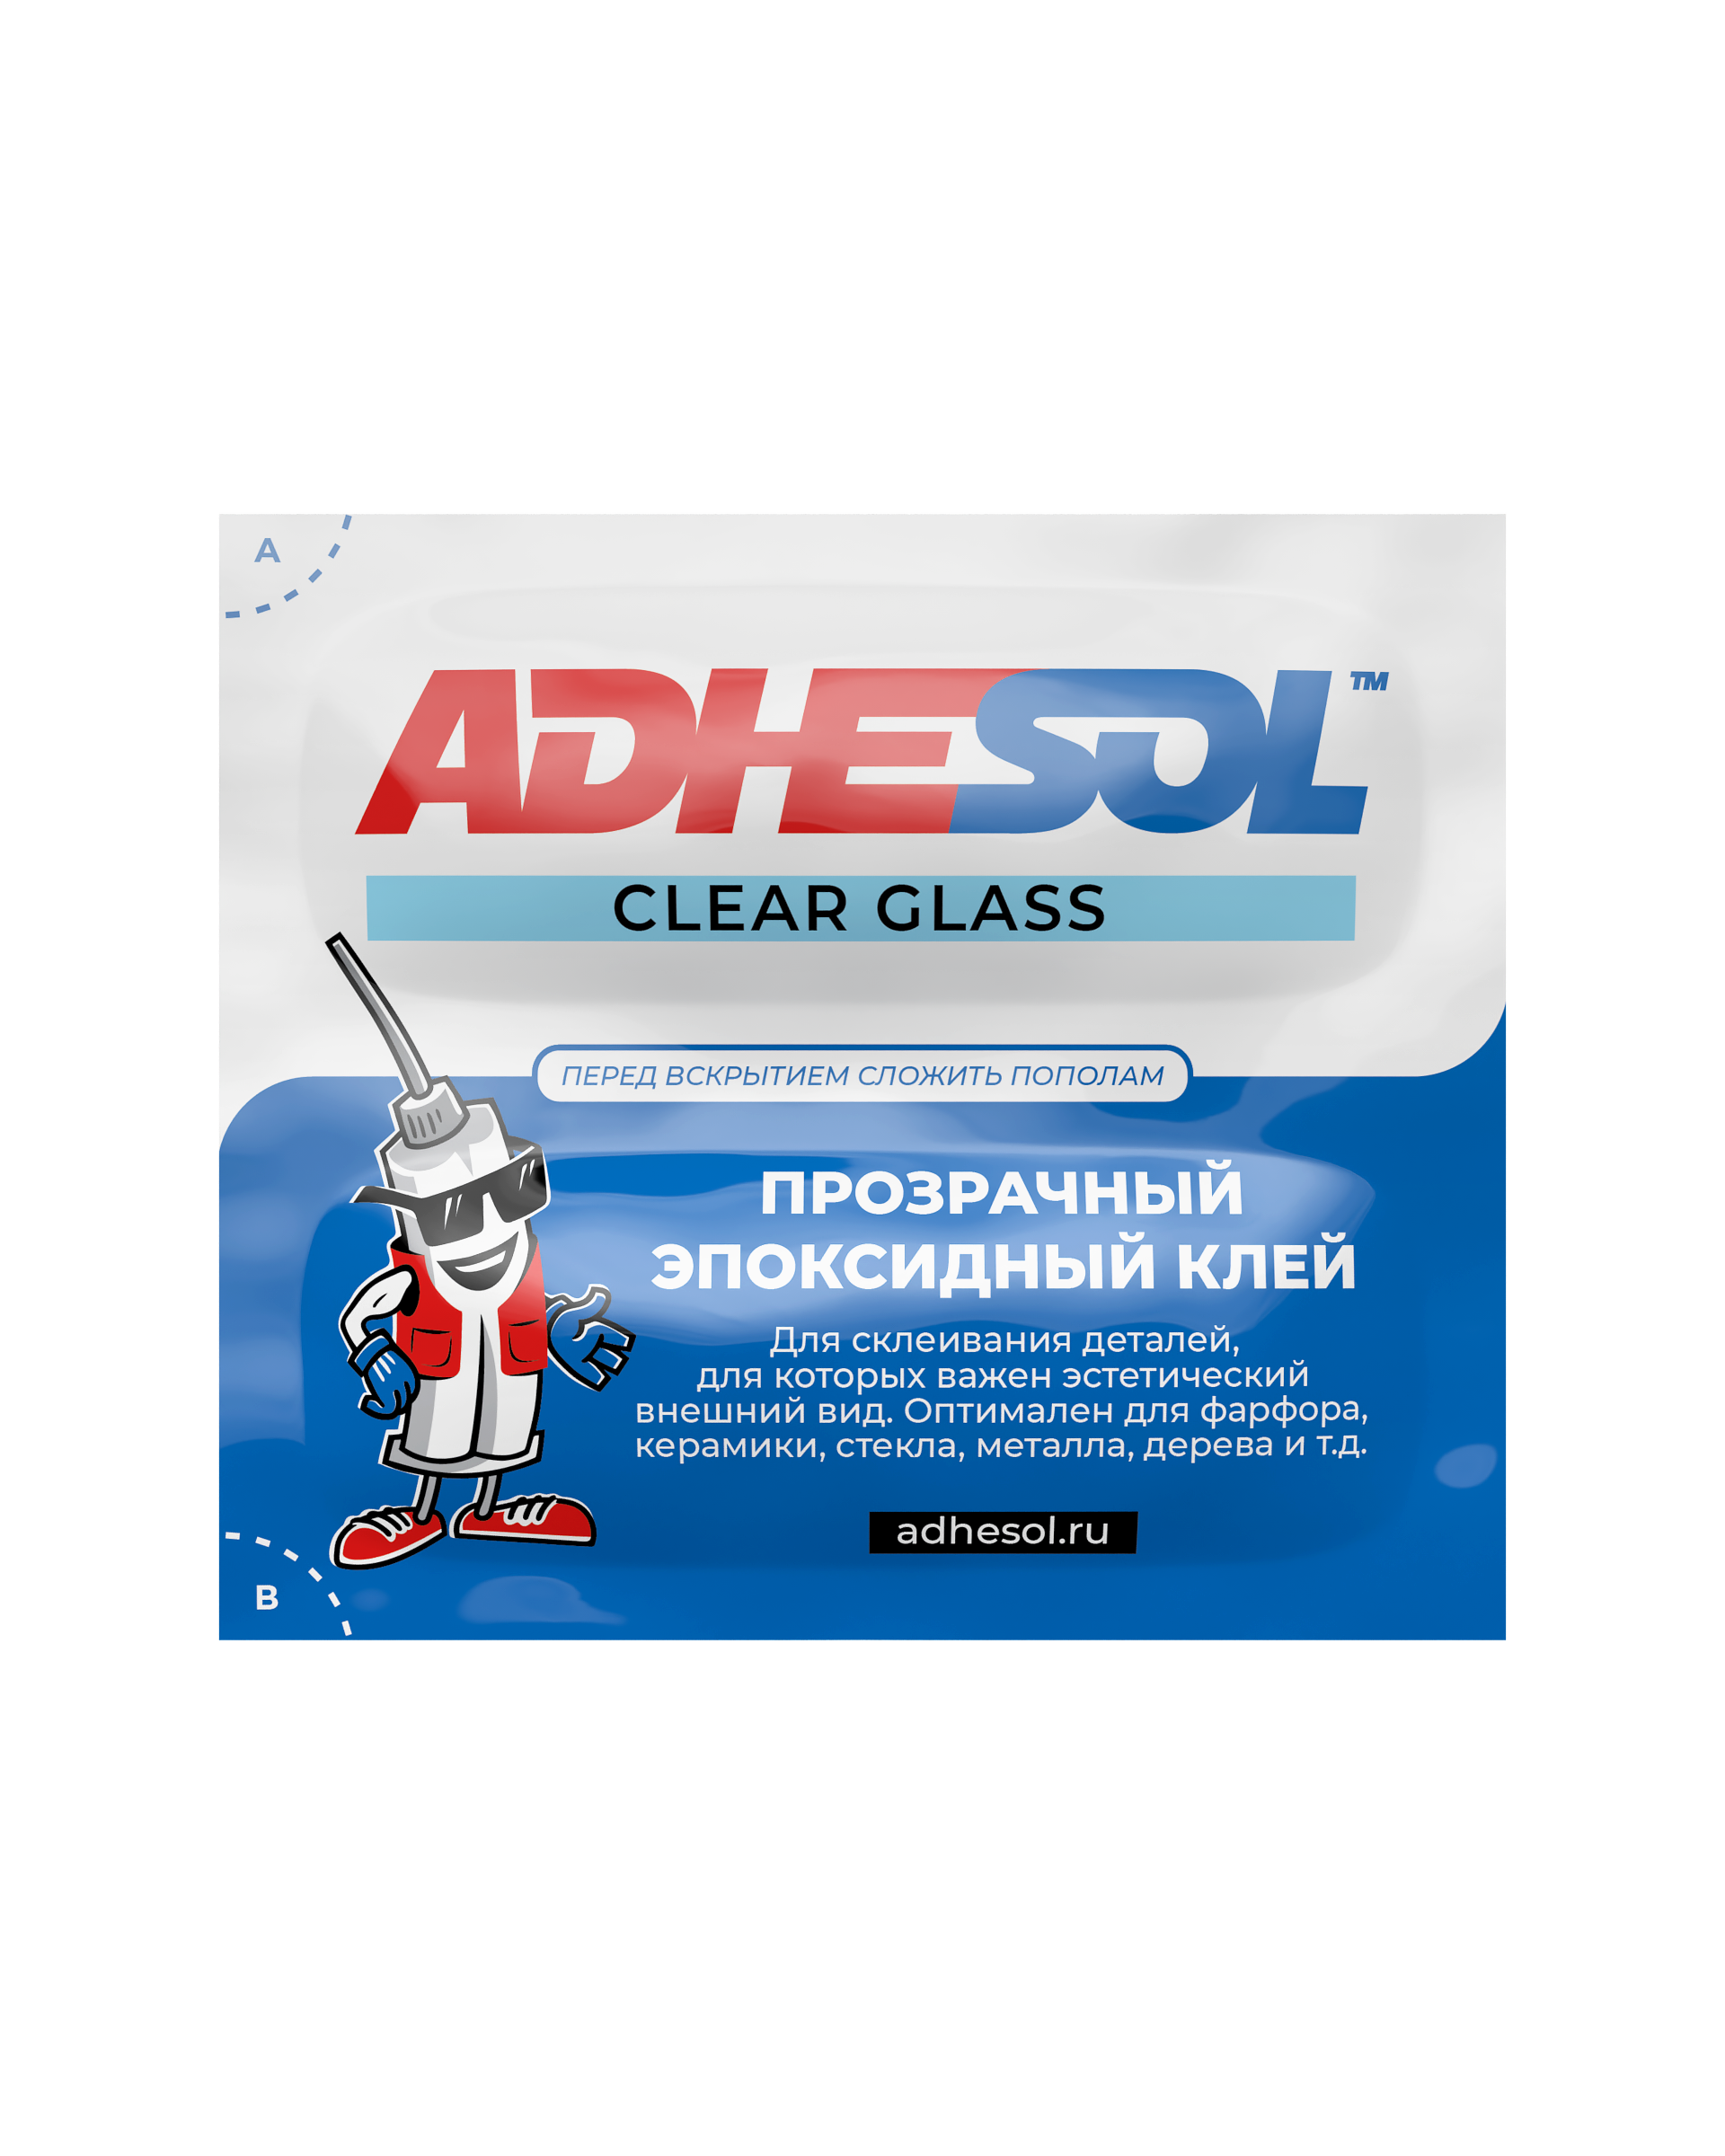 Прозрачный эпоксидный клей ADHESOL CLEAR GLASS